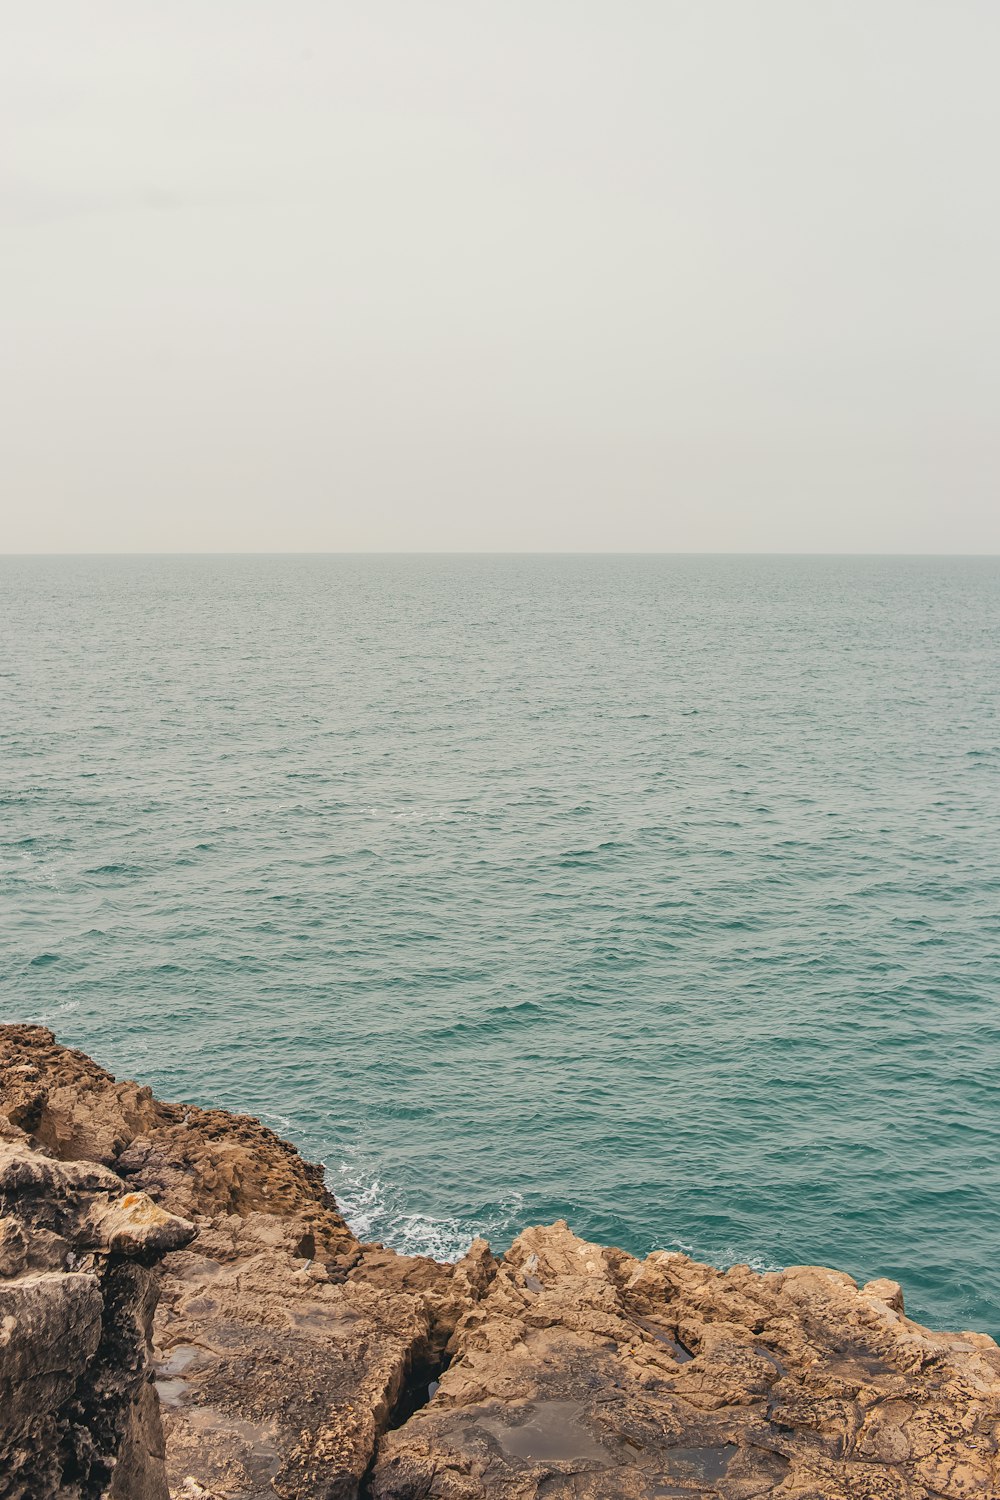 Un homme assis sur un rocher près de l’océan